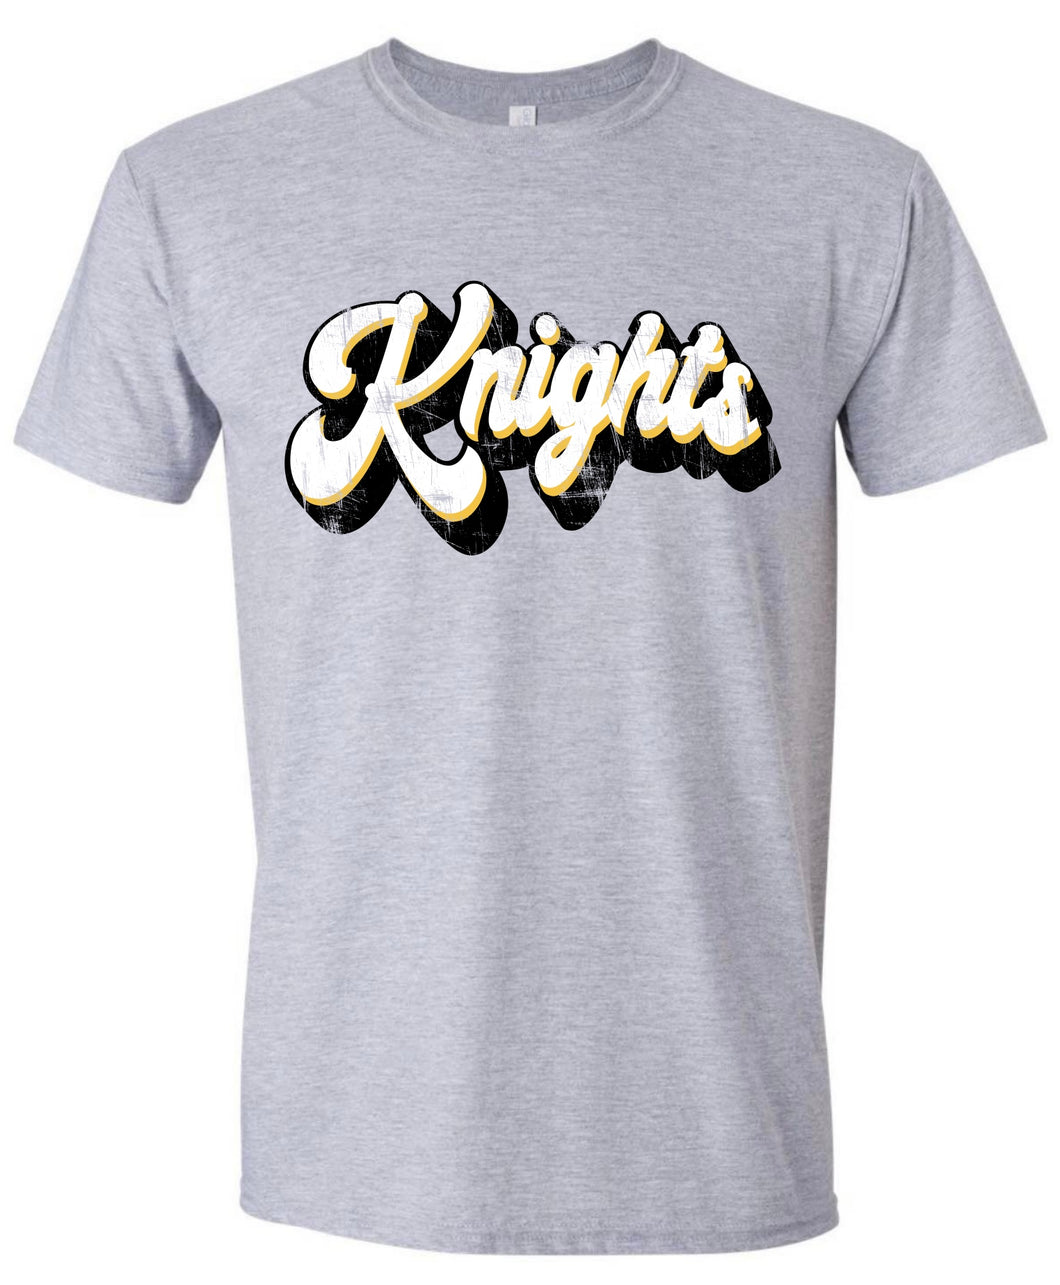 Distresssed Retro Knights tshirt